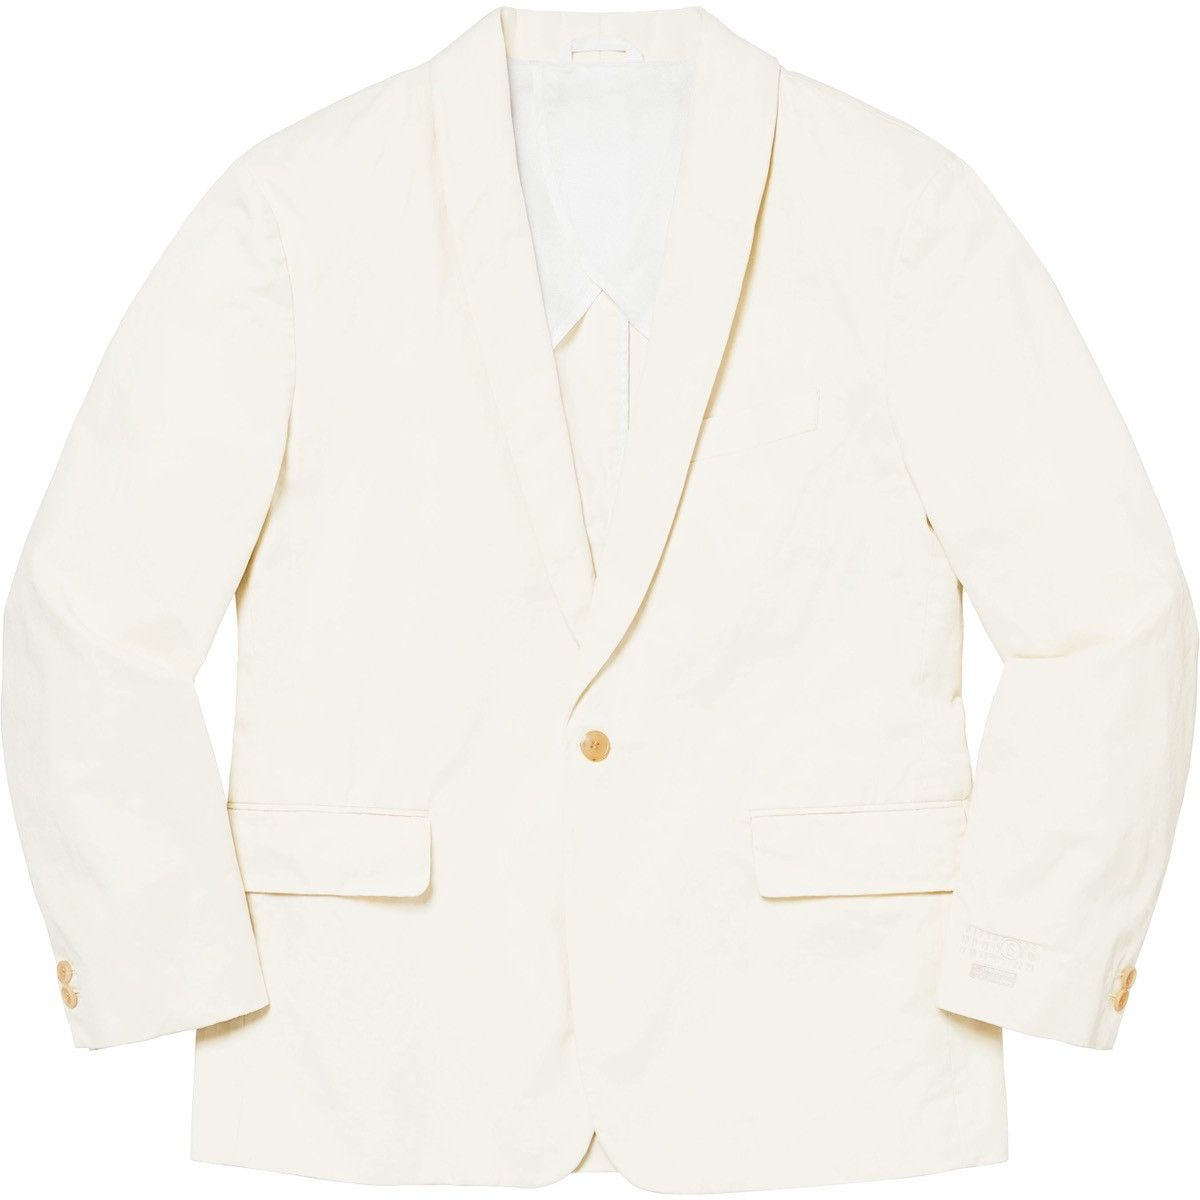 Supreme Supreme MM6 Maison Margiela Washed Cotton Suit (W/ Vest) | Grailed